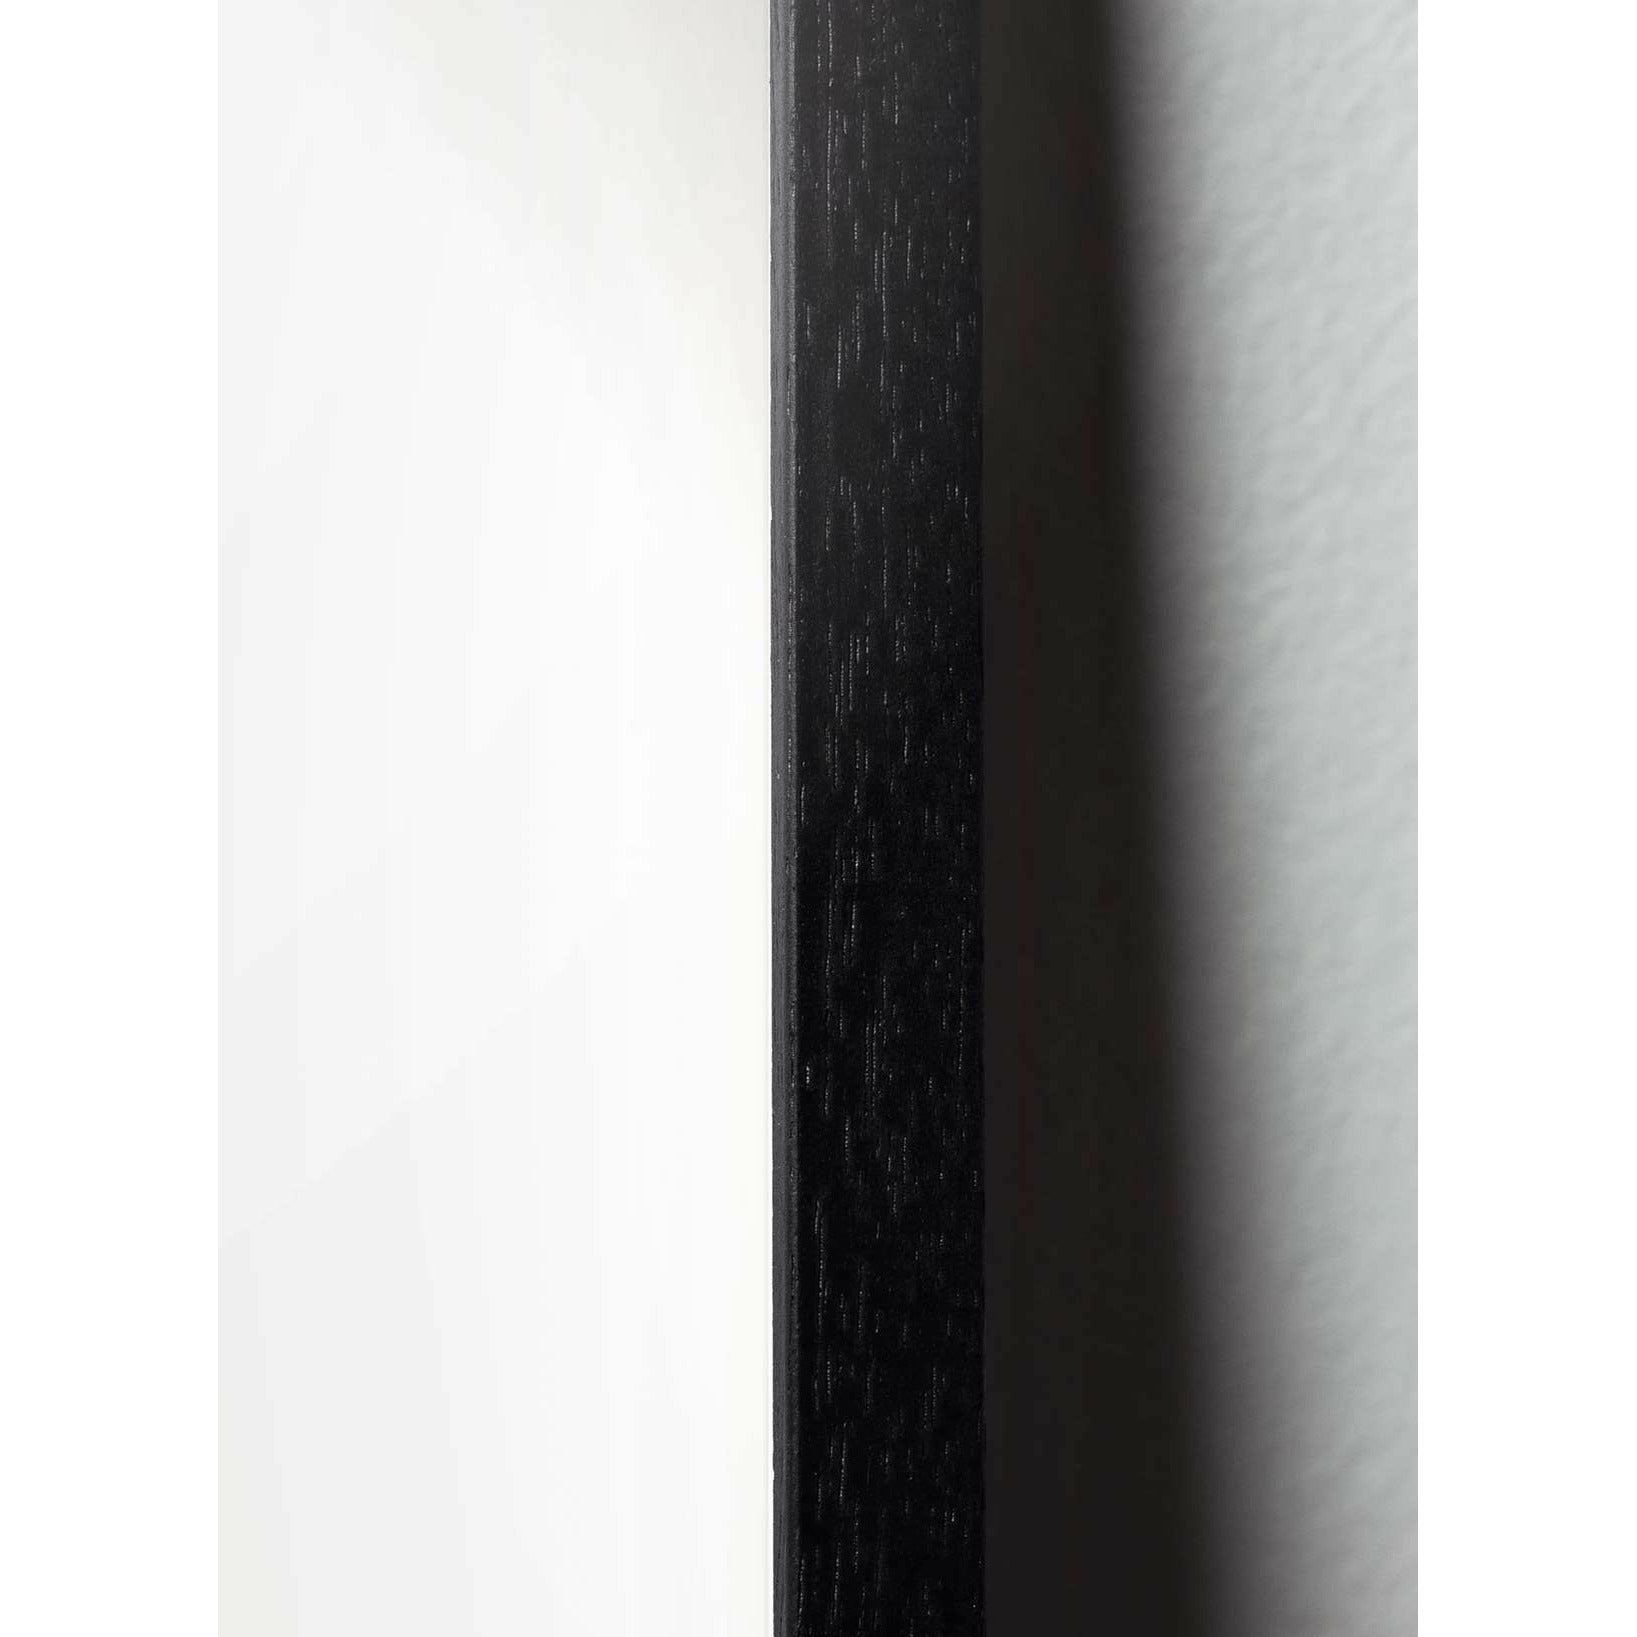 Pomysły plakat linii stożkowej, rama w czarnym lakierowanym drewnie 30x40 cm, białe tło